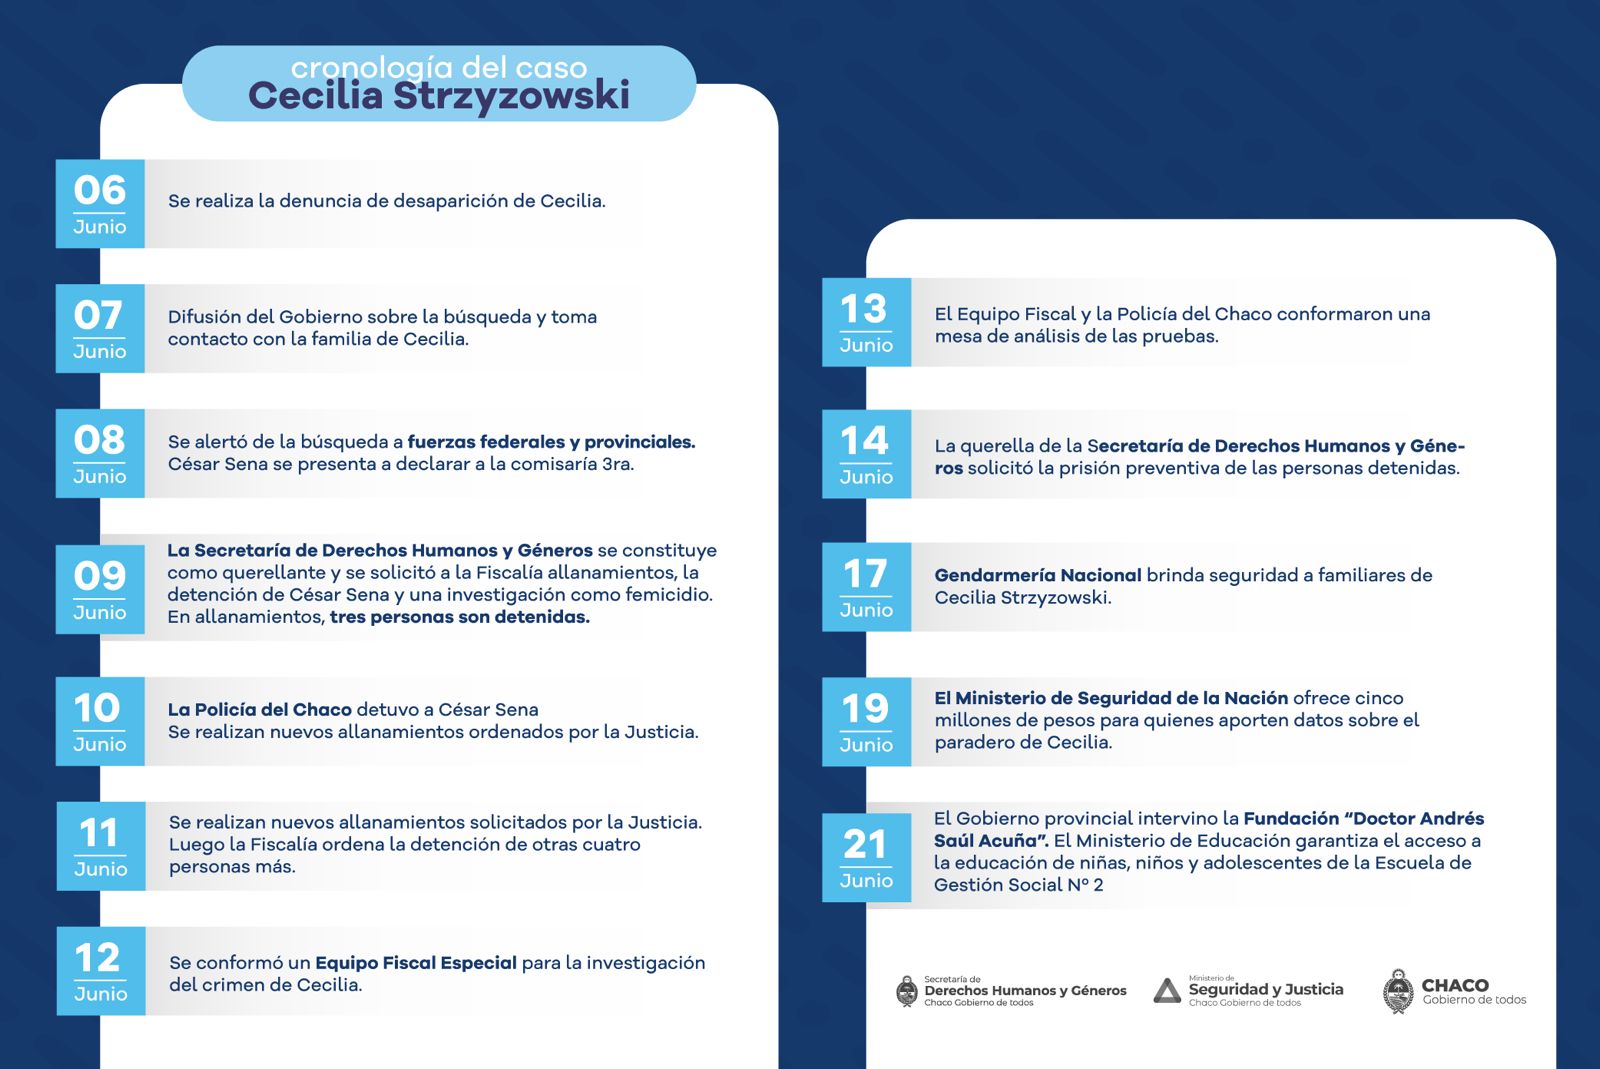 *El Gobierno provincial reitera el pedido de prisión preventiva de los siete detenidos por el caso Cecilia Strzyzowski*